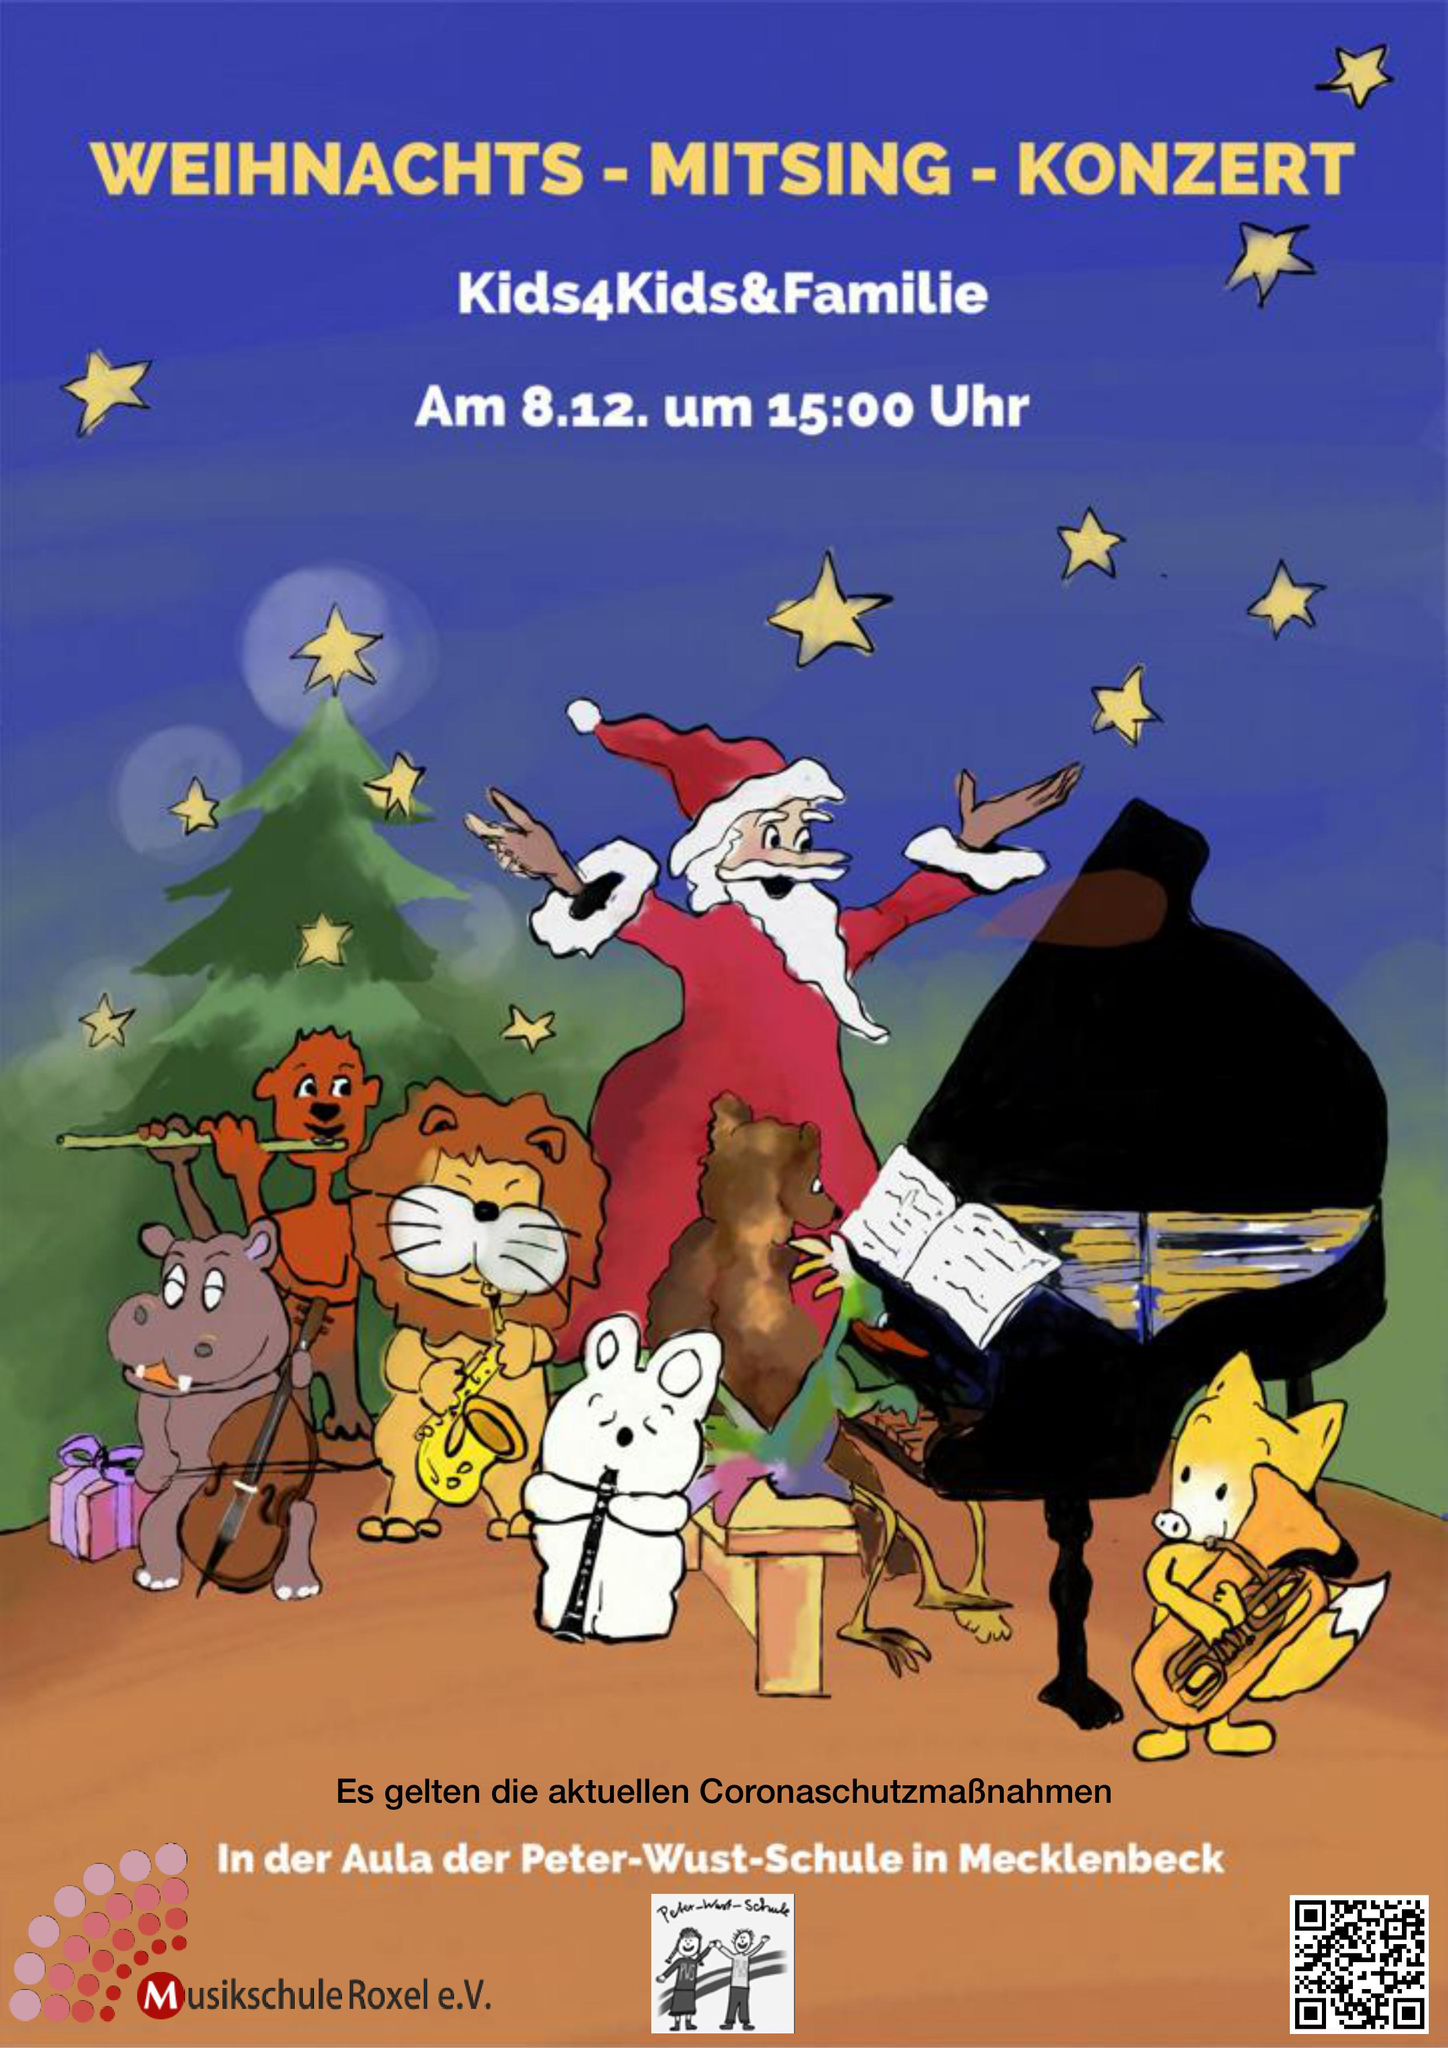 Weihnachts - Mitsing - Konzert am 8. Dezember um 15:00 Uhr